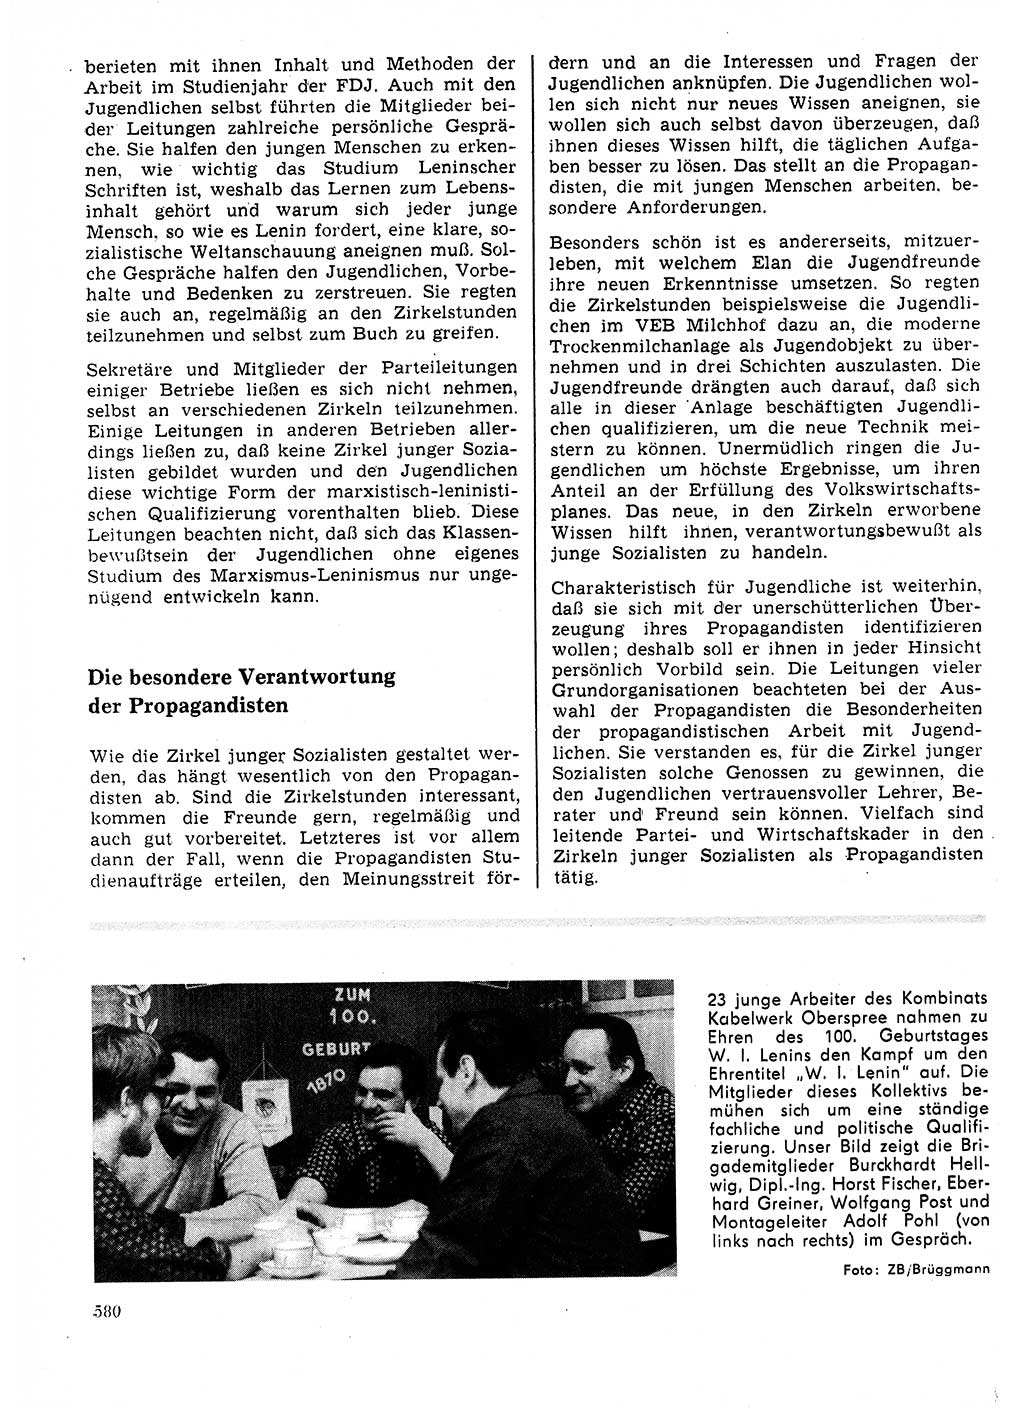 Neuer Weg (NW), Organ des Zentralkomitees (ZK) der SED (Sozialistische Einheitspartei Deutschlands) für Fragen des Parteilebens, 25. Jahrgang [Deutsche Demokratische Republik (DDR)] 1970, Seite 580 (NW ZK SED DDR 1970, S. 580)